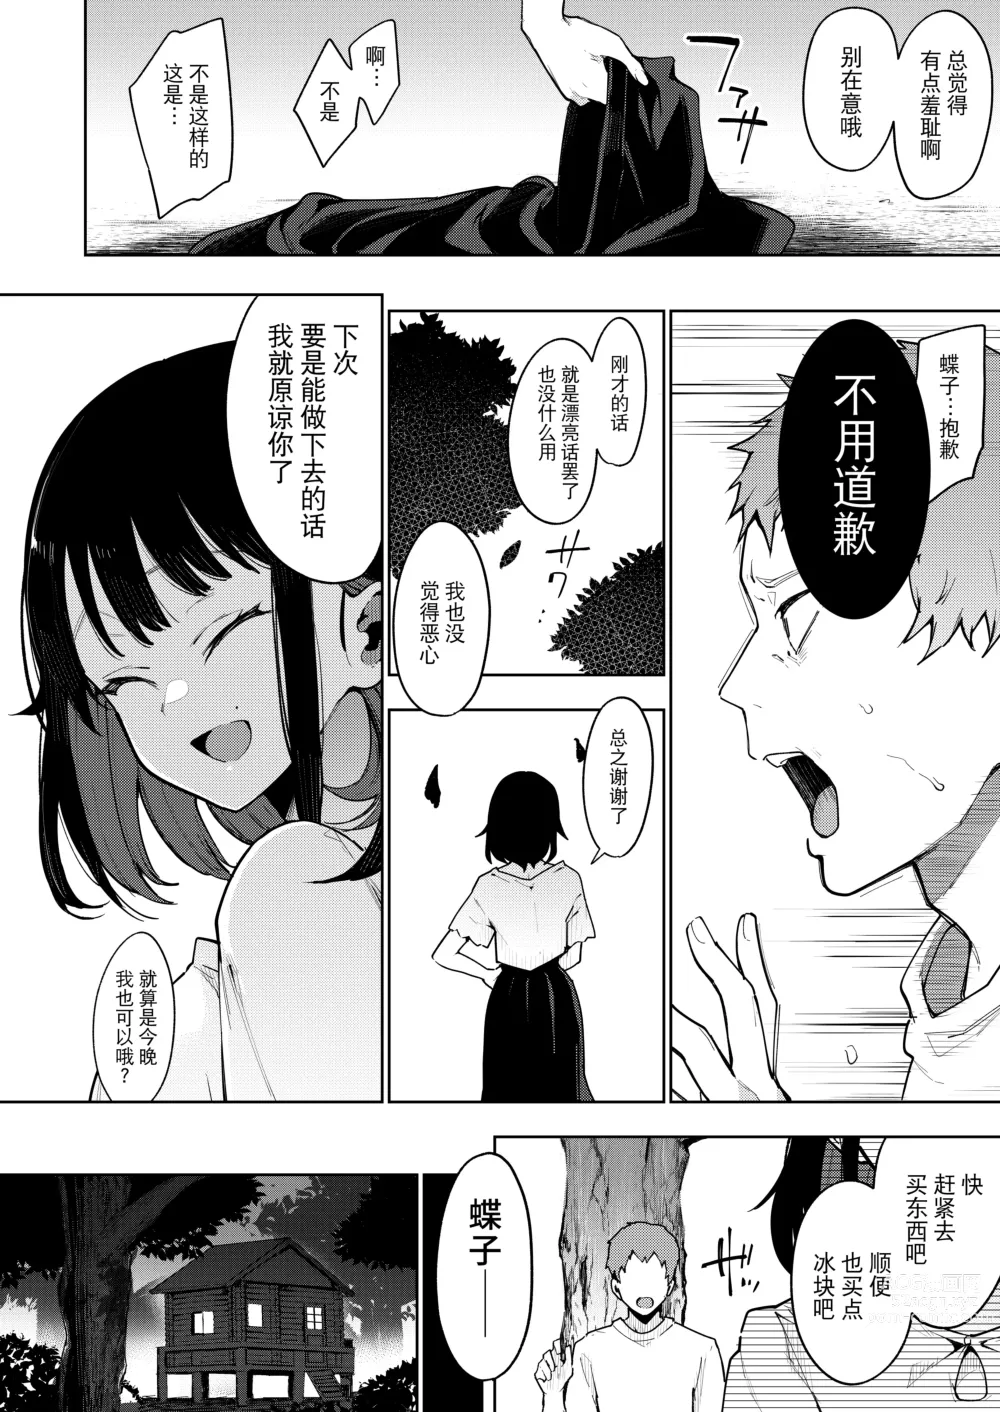 Page 164 of doujinshi Chouko I-V